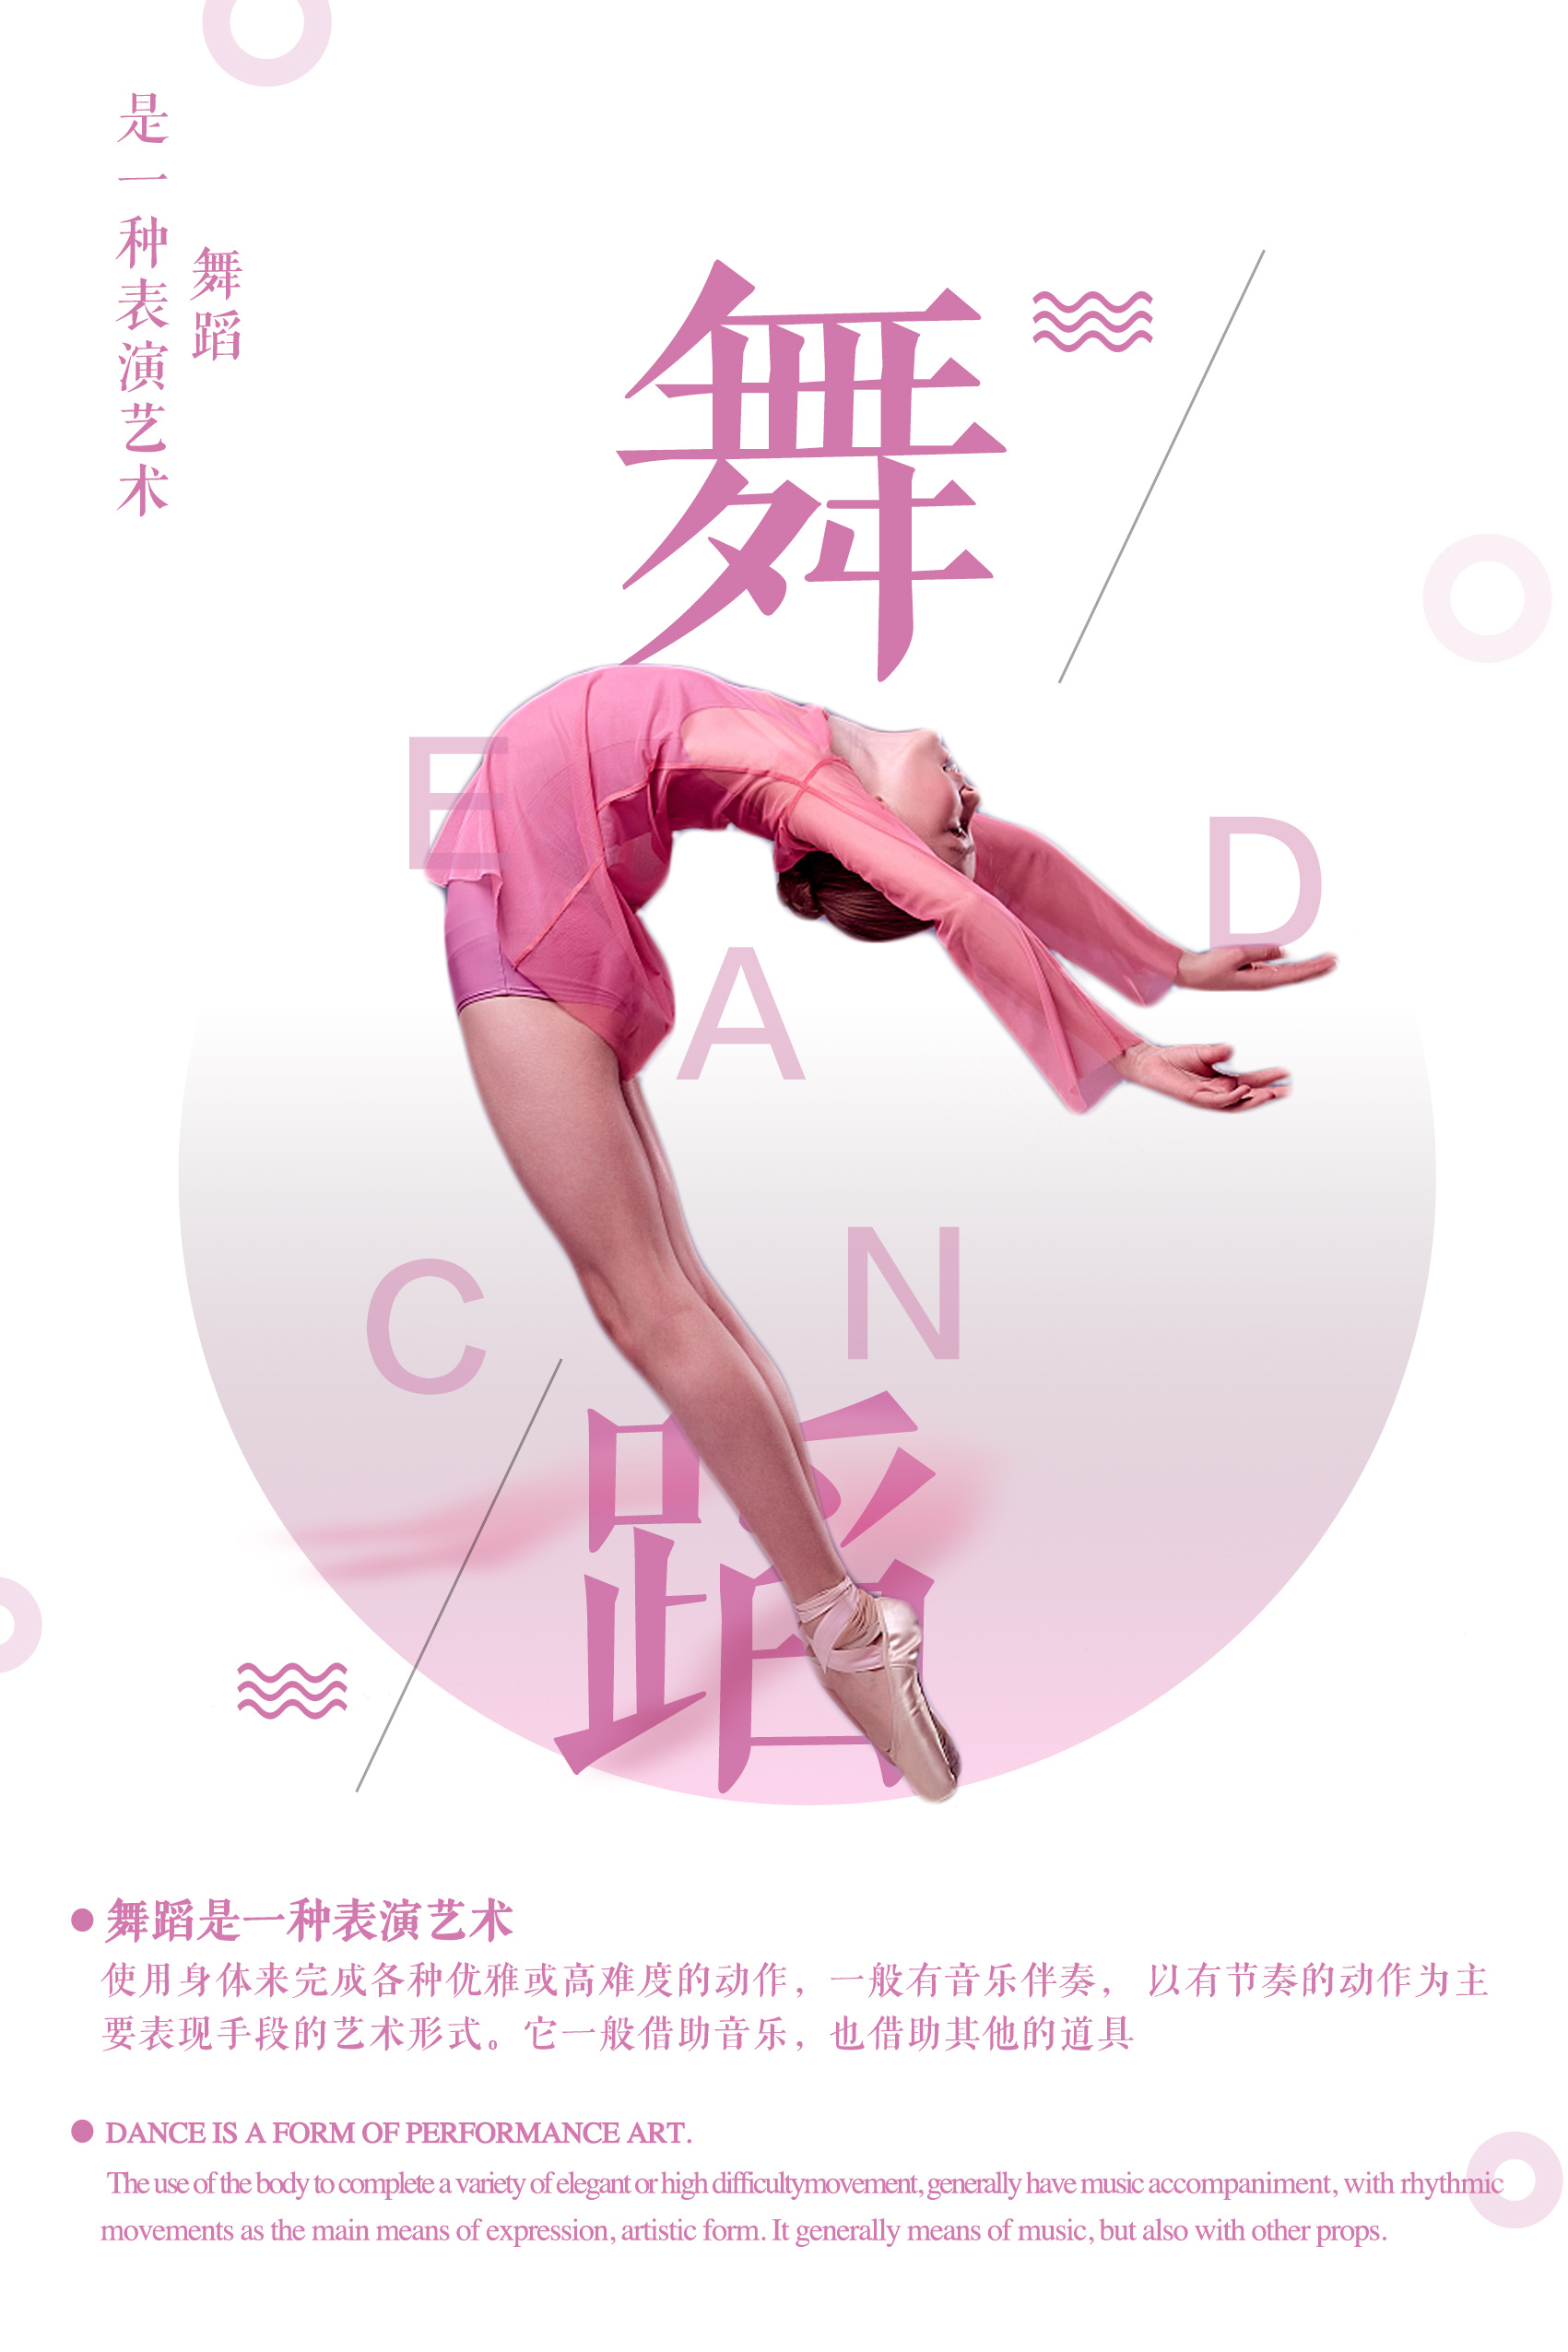 舞蹈 舞者 女性52065_瑜珈/舞蹈_人物类_图库壁纸_68Design